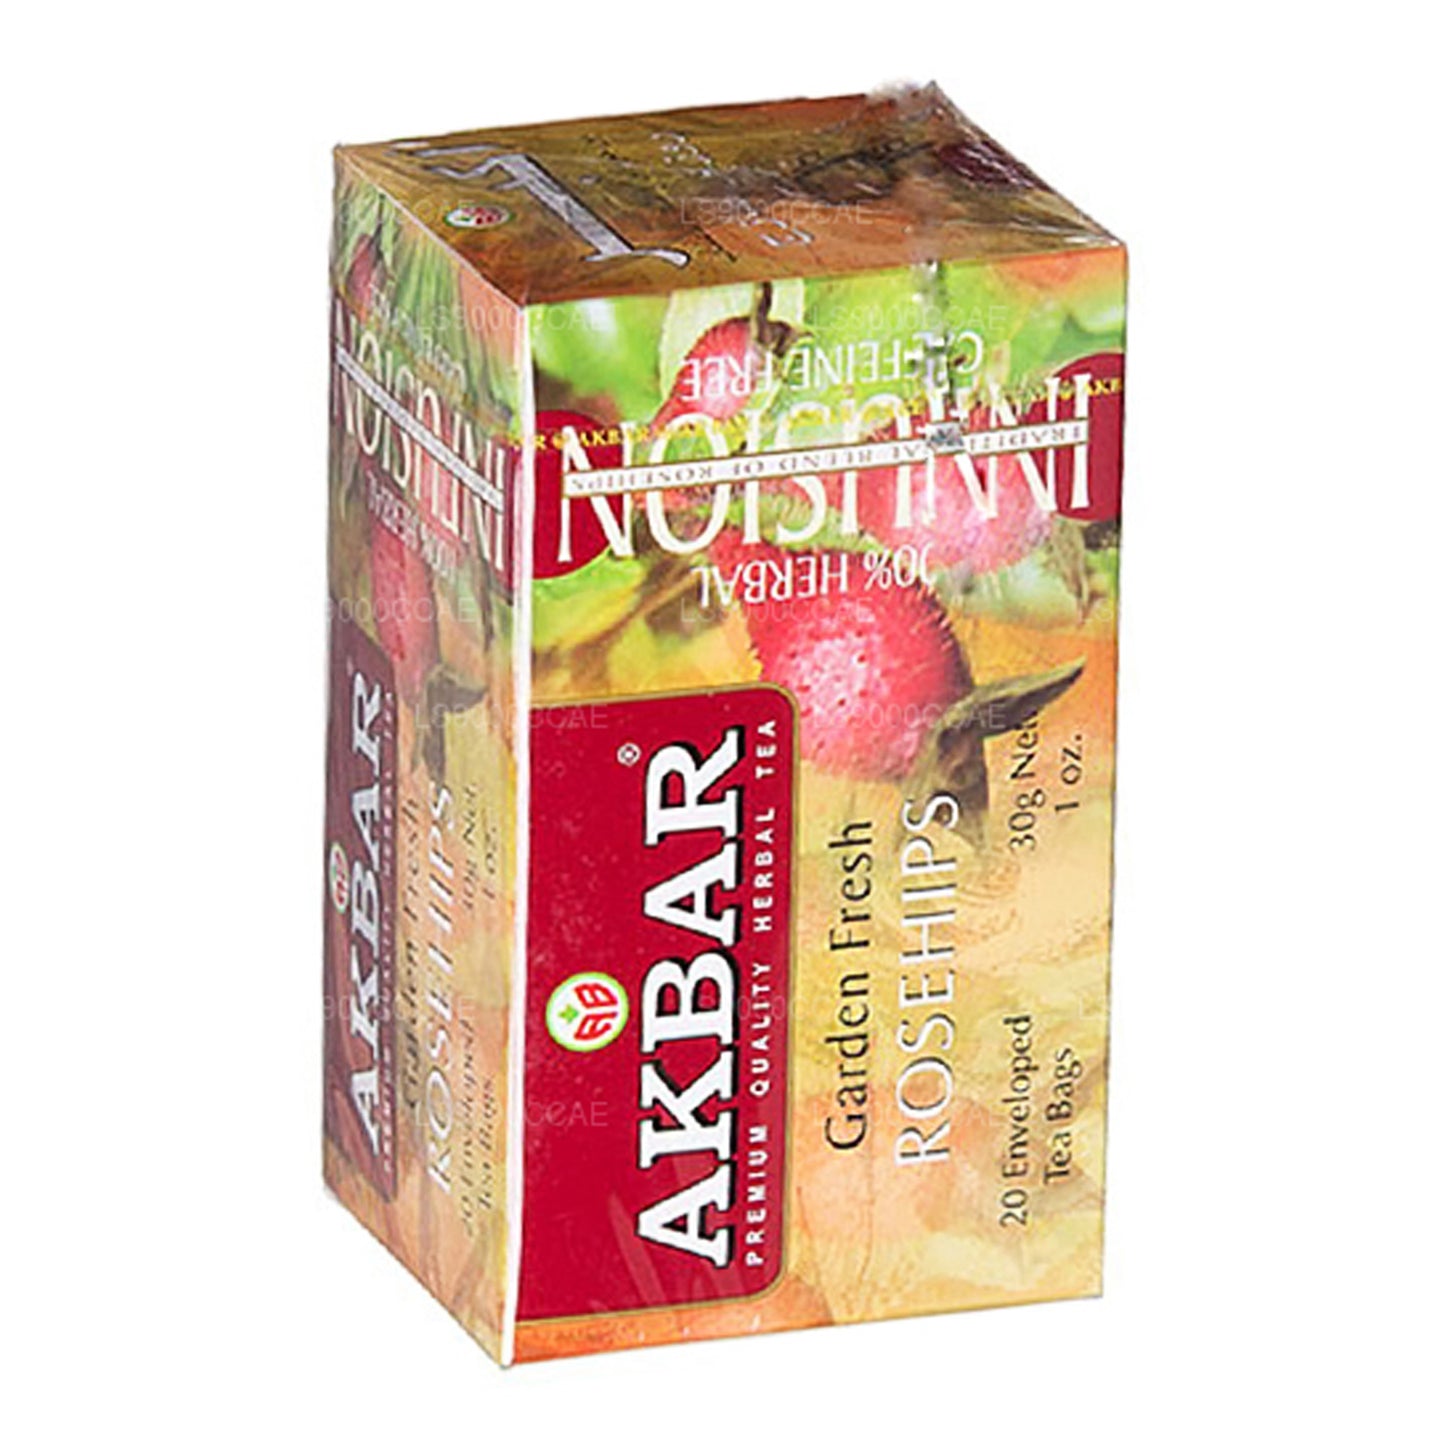 20 bolsitas de té con rosa mosqueta fresca Akbar Garden (30 g)